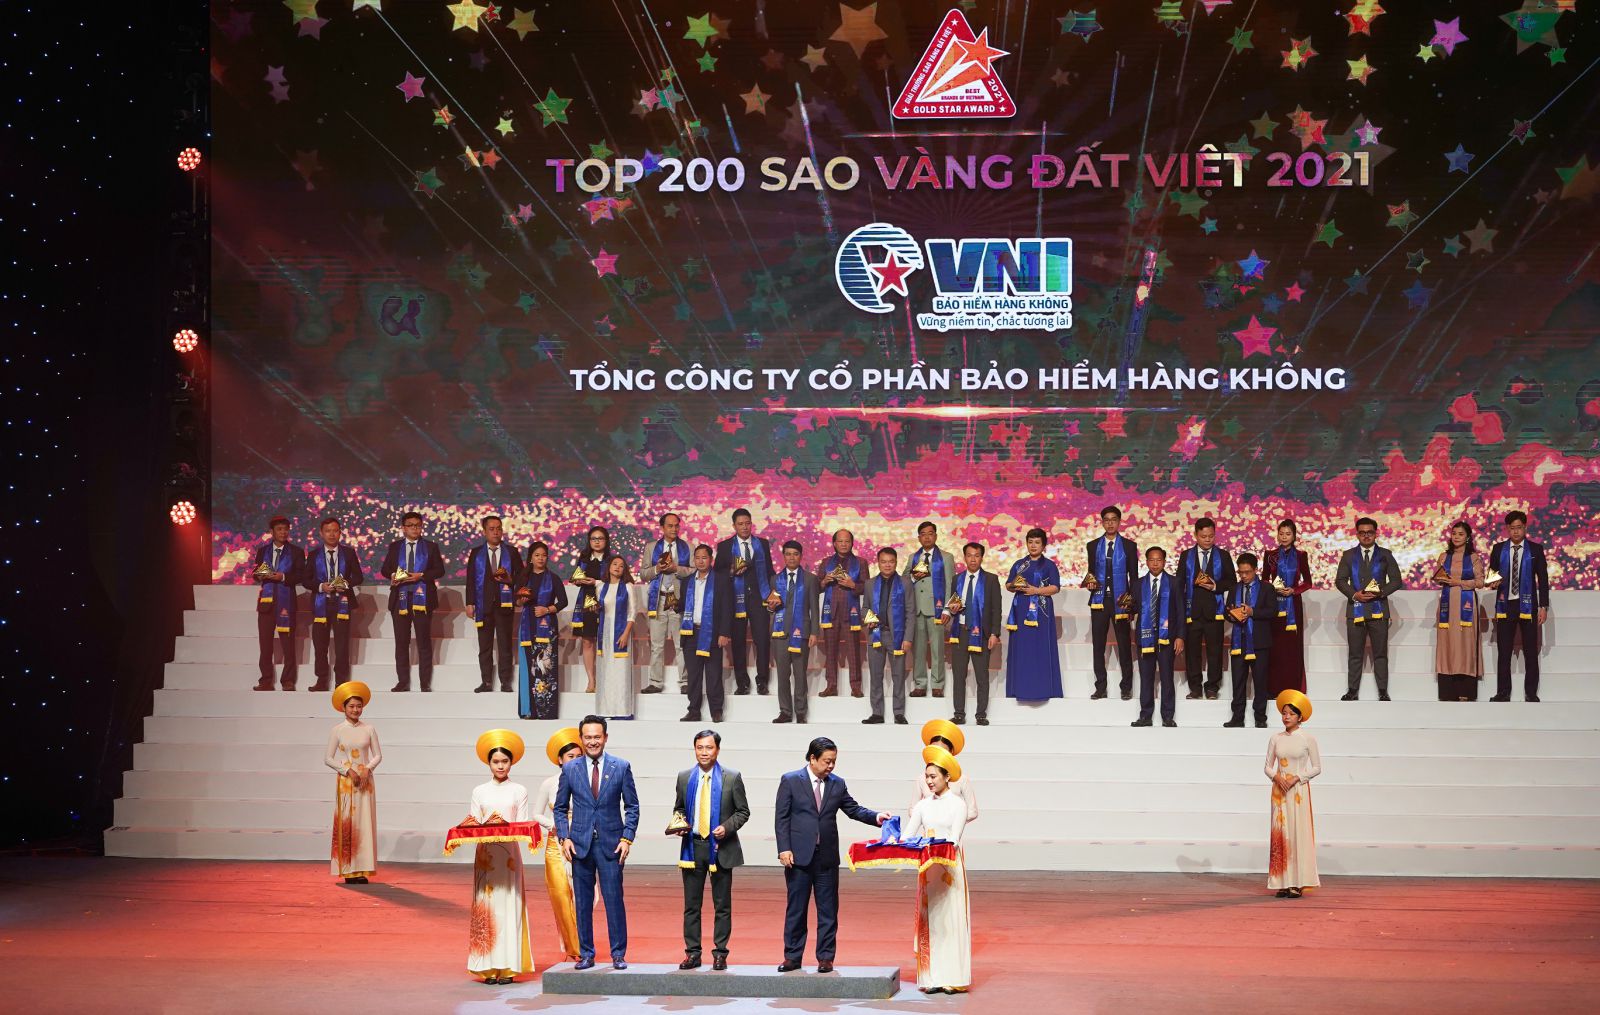 Đại diện VNI nhận giải thưởng Sao Vàng Đất Việt 2021VNI nhận giải thưởng Sao Vàng Đất Việt 2021